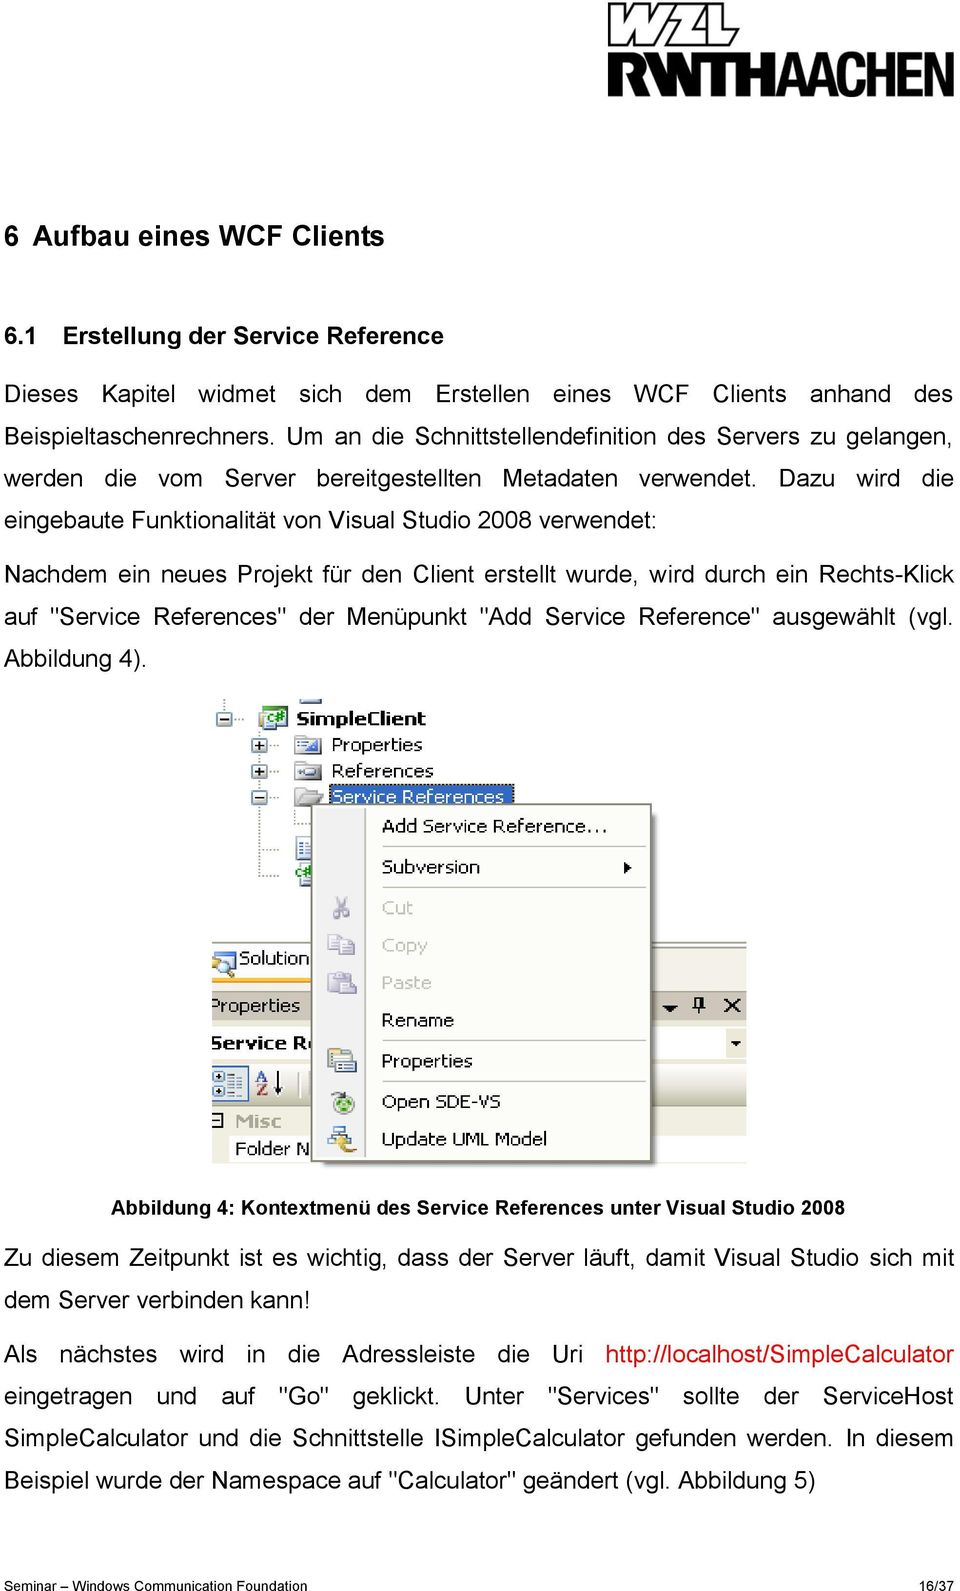 Dazu wird die eingebaute Funktionalität von Visual Studio 2008 verwendet: Nachdem ein neues Projekt für den Client erstellt wurde, wird durch ein Rechts-Klick auf "Service References" der Menüpunkt